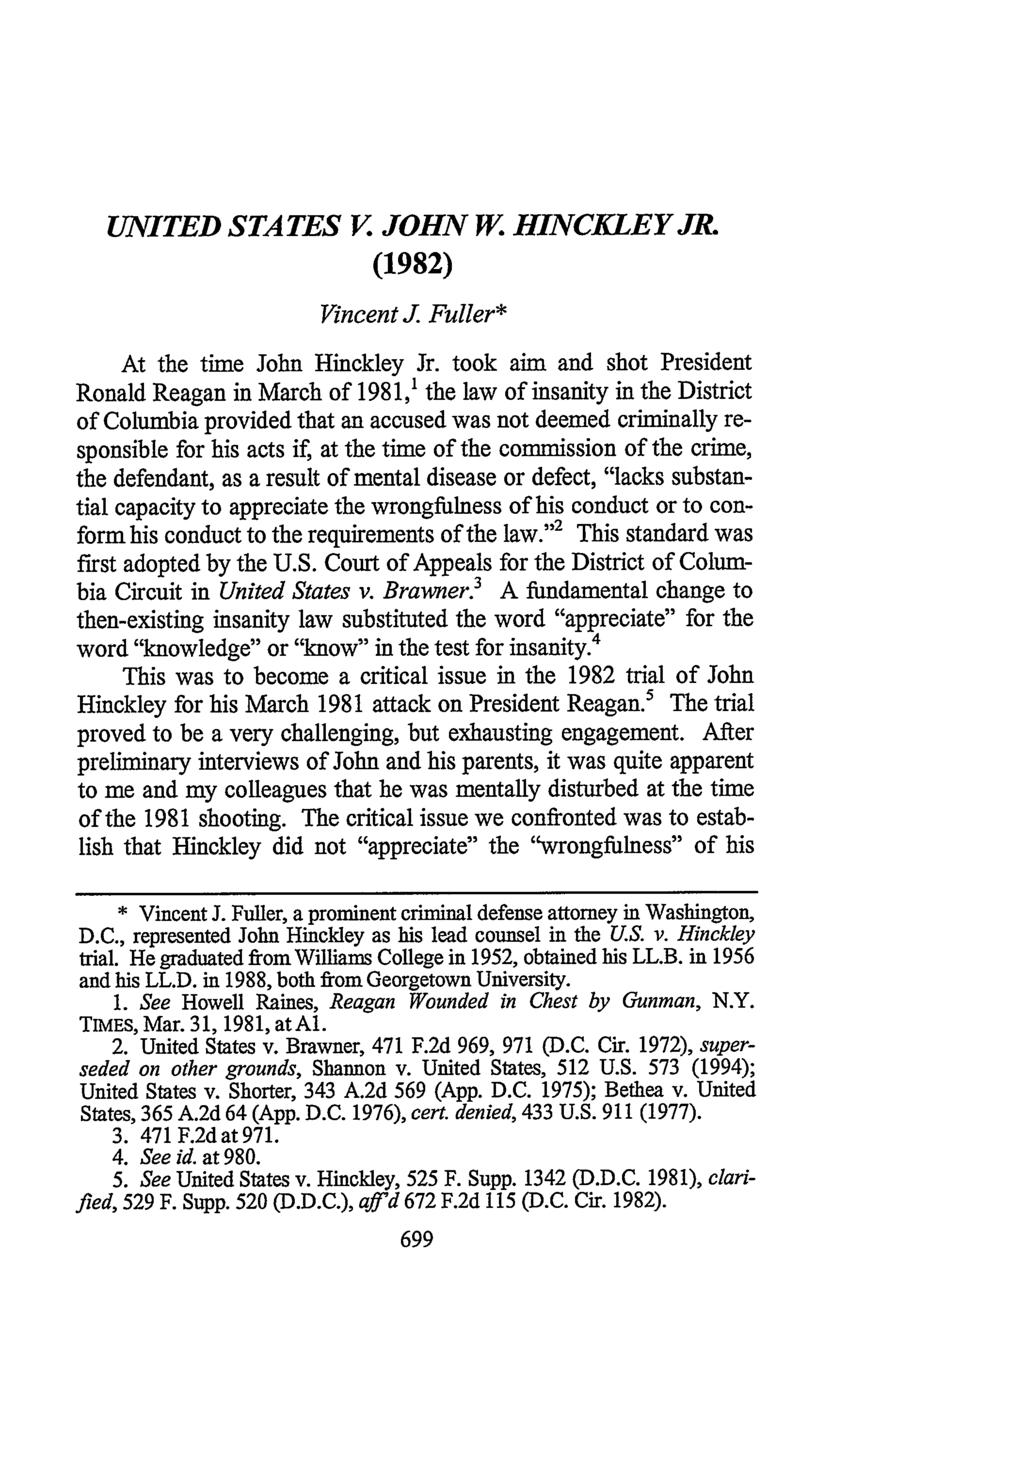 UNITED STATES V. JOHN W. HINCKLEY JR. (1982) Vincent J. Fuller* At the time John Hinckley Jr.